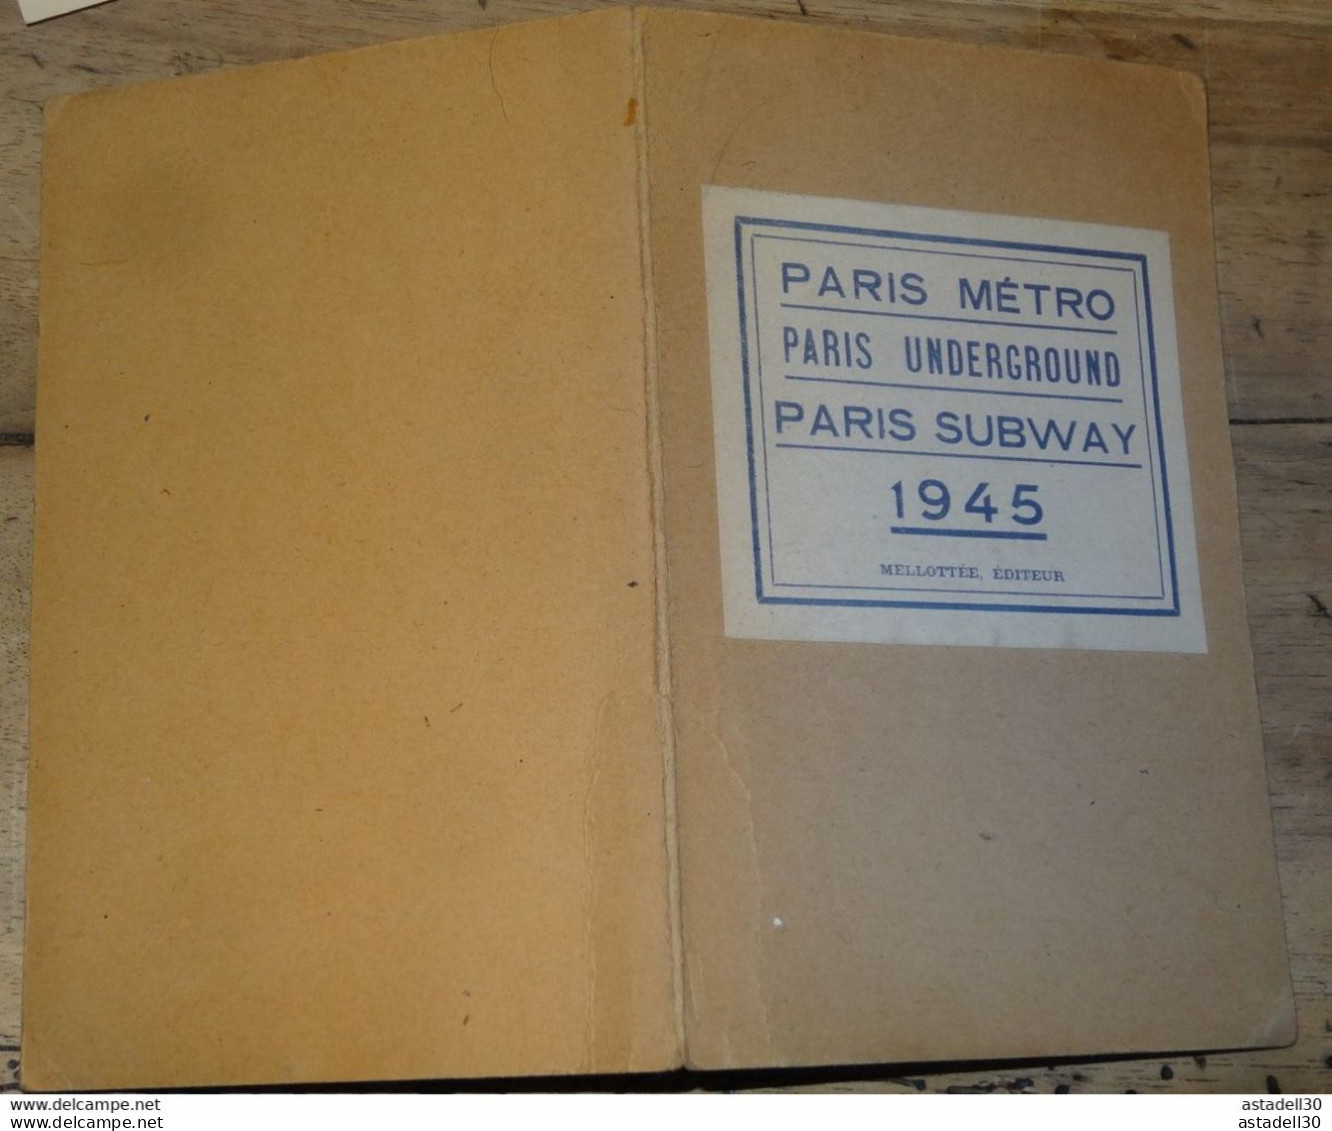 Plan Du METRO De Paris 1945 , Paris Underground  Subway 1945 Melottée éditeur ........ PHI..........CL-7-5 - Europa